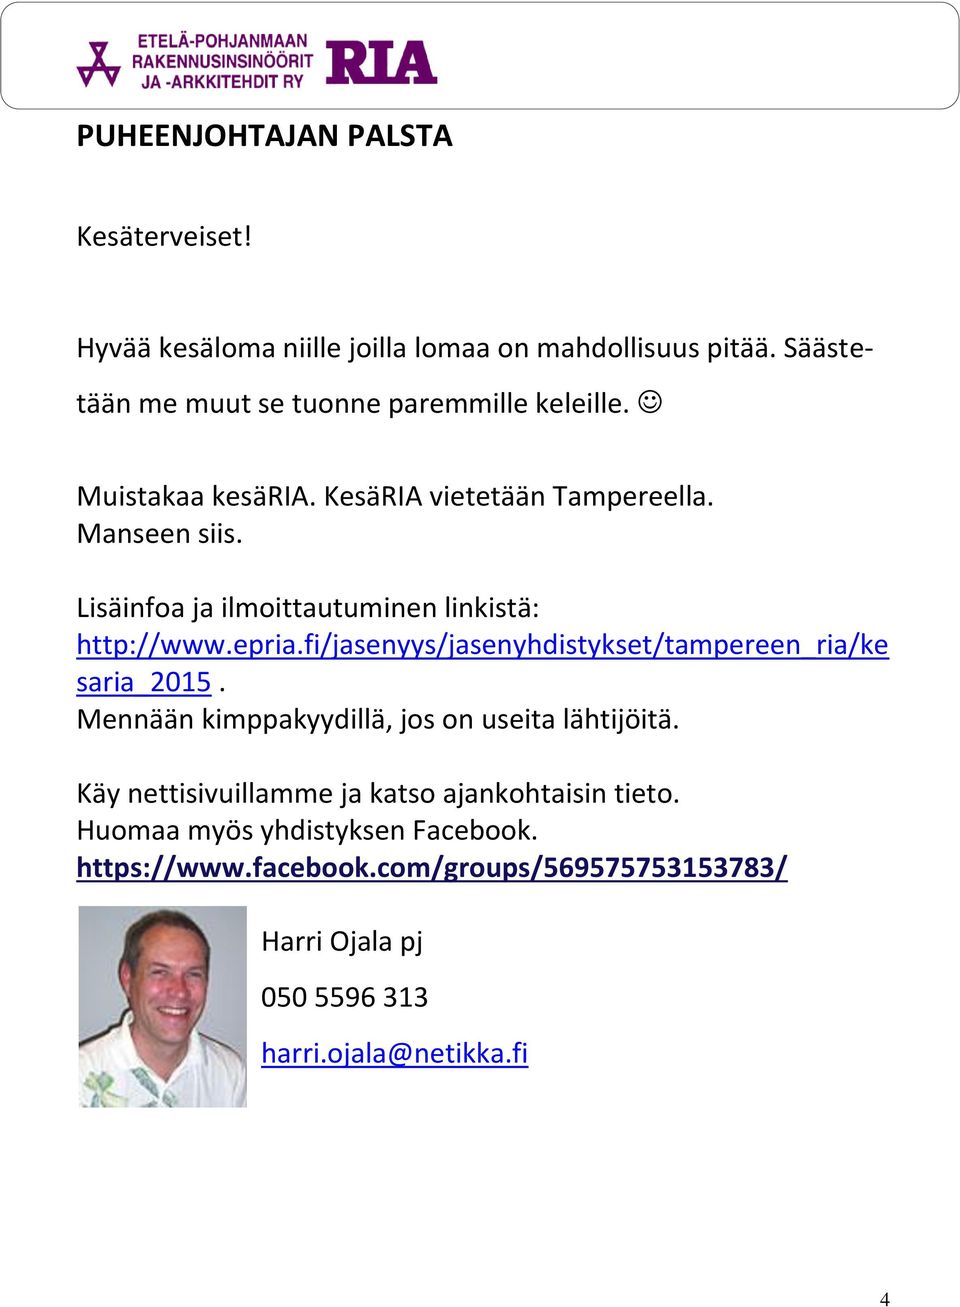 Lisäinfoa ja ilmoittautuminen linkistä: http://www.epria.fi/jasenyys/jasenyhdistykset/tampereen_ria/ke saria_2015.